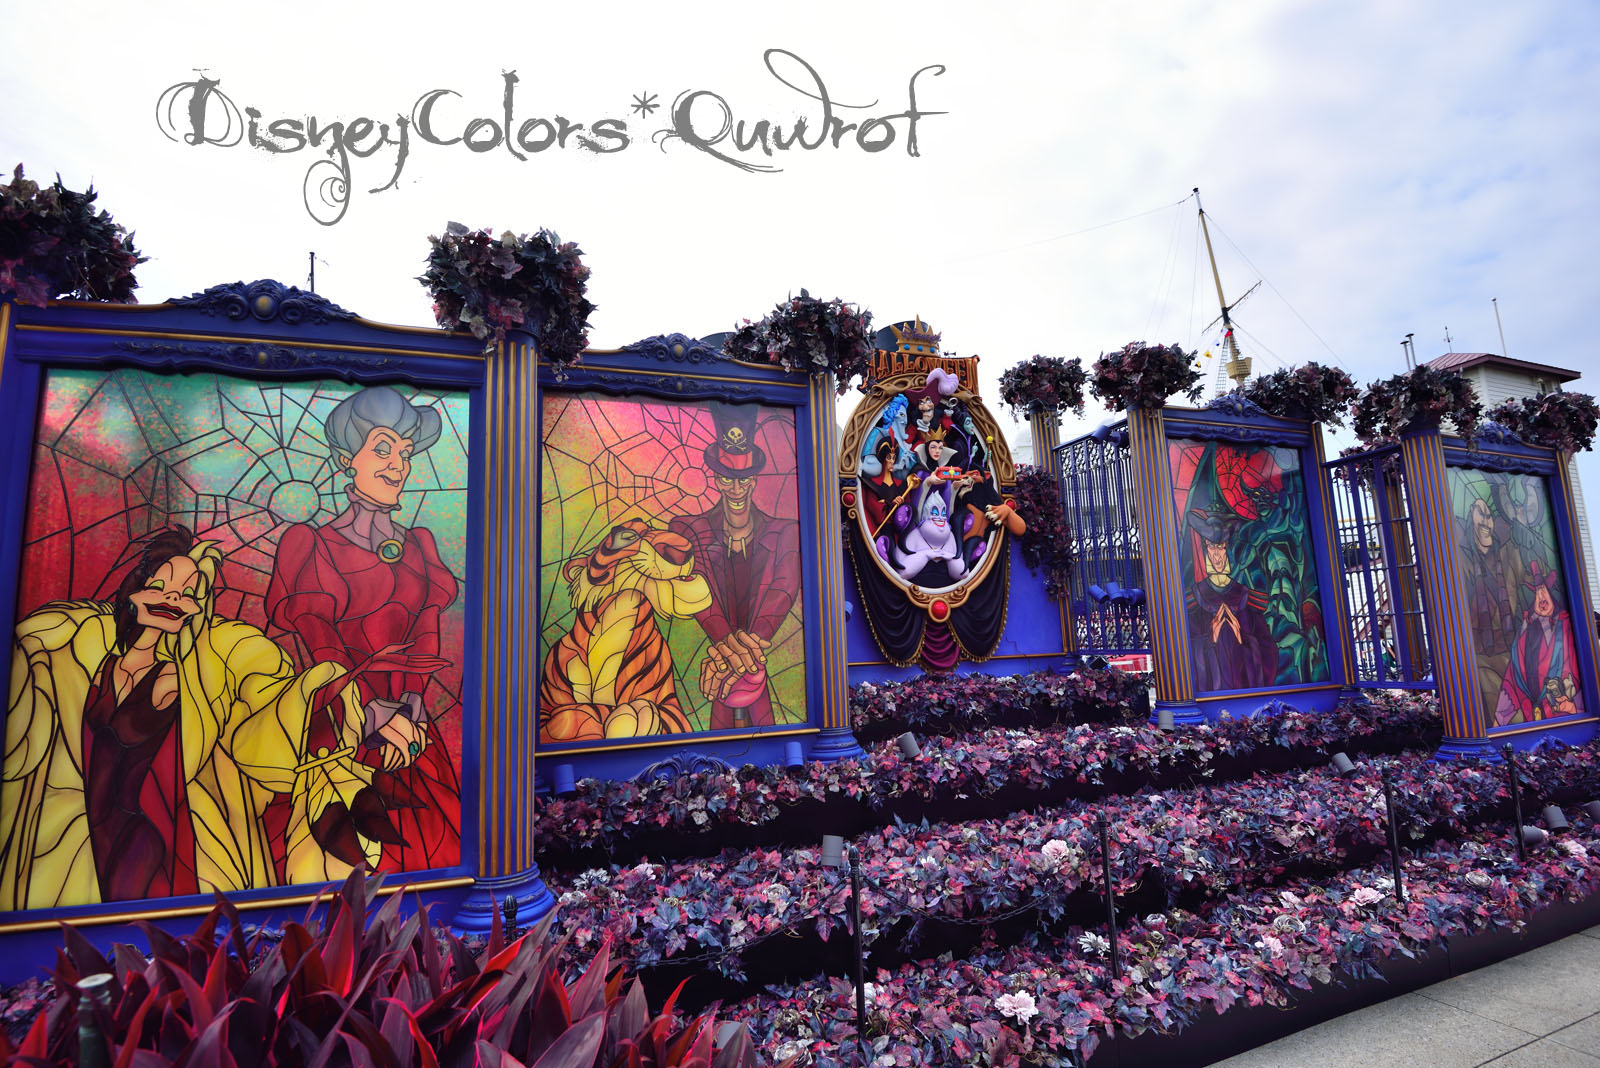 東京ディズニーシー ディズニー ハロウィーン15 特集 Disney Colors Blog